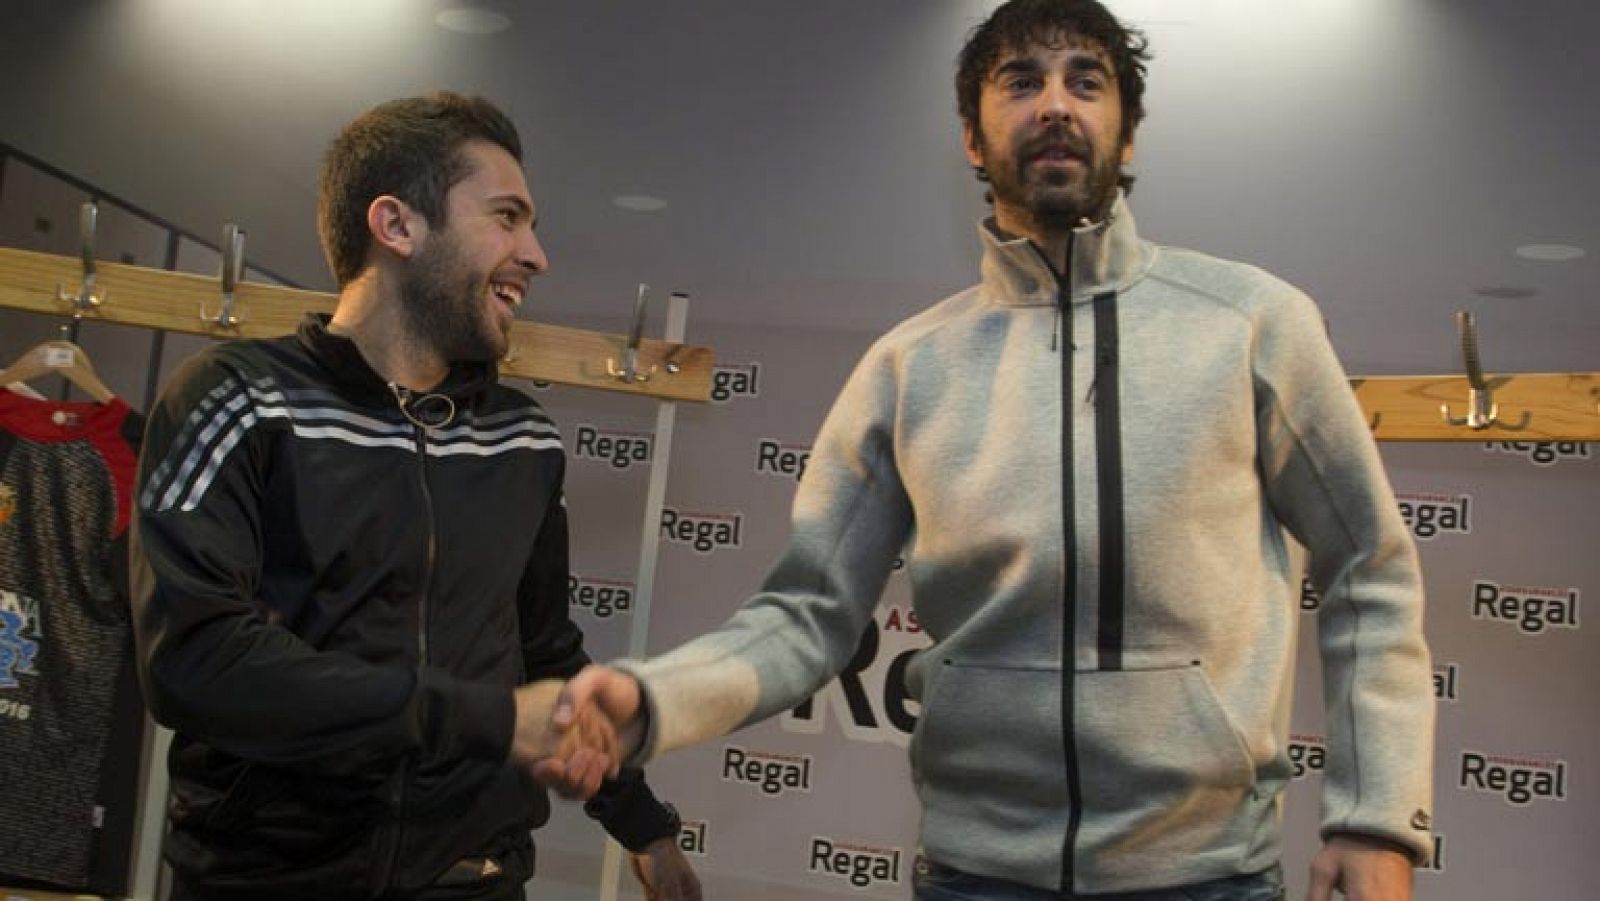 El defensa del Barcelona Jordi Alba ha confesado este lunes que ya ve "la luz" al final del túnel por el que ha atravesado los dos últimos meses, en los que ha encadenado dos lesiones musculares -una en cada pierna- que le han impedido ayudar al equipo.